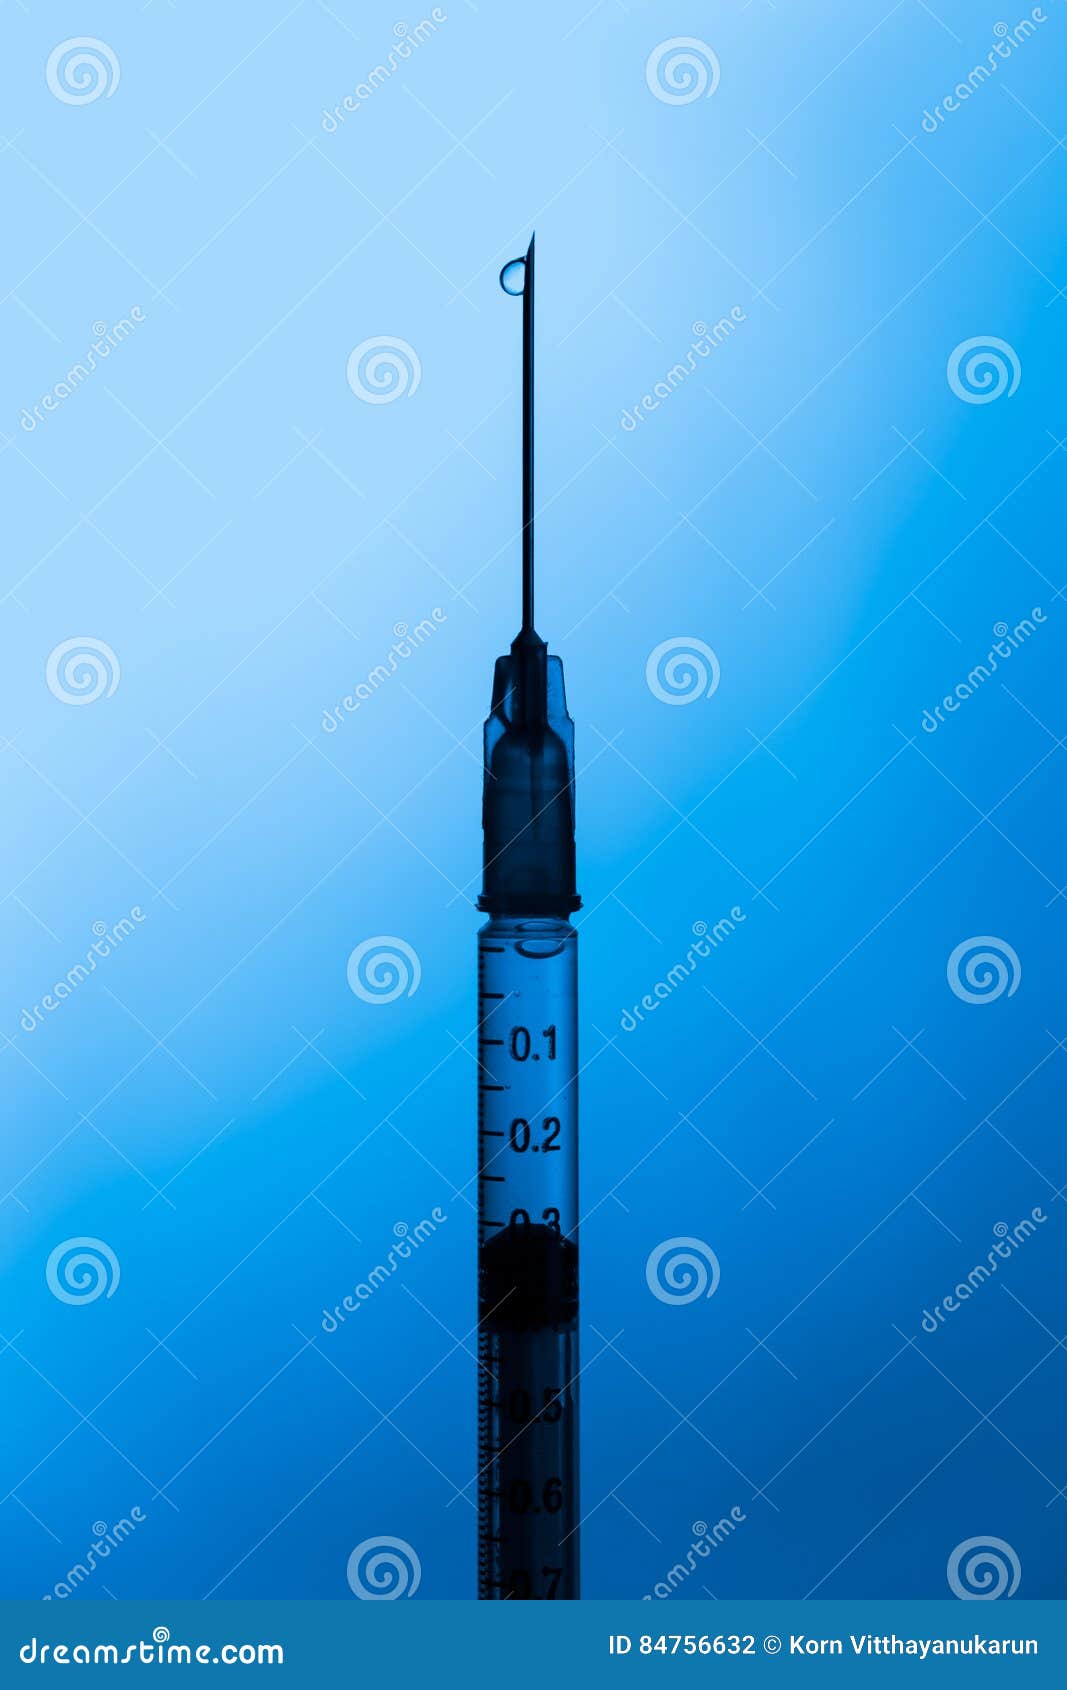 Drug Syringe With Liquid Heroin Powder Stock Photo - Image ...